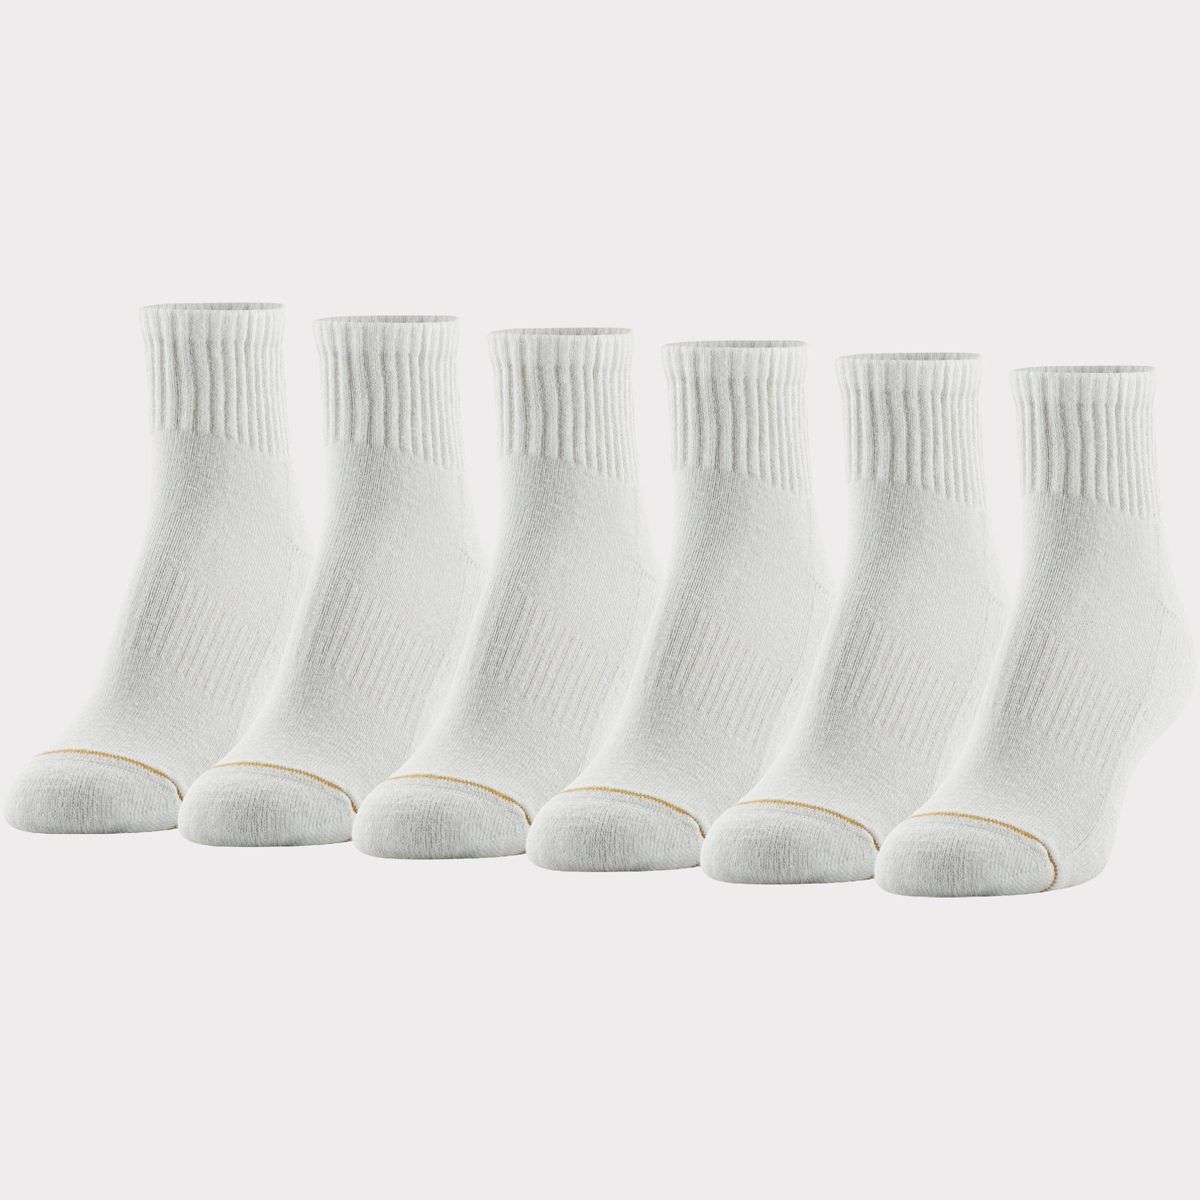 All Pro Women's 6pk Quarter Cotton Athletic Socks - White 4-10 | Target